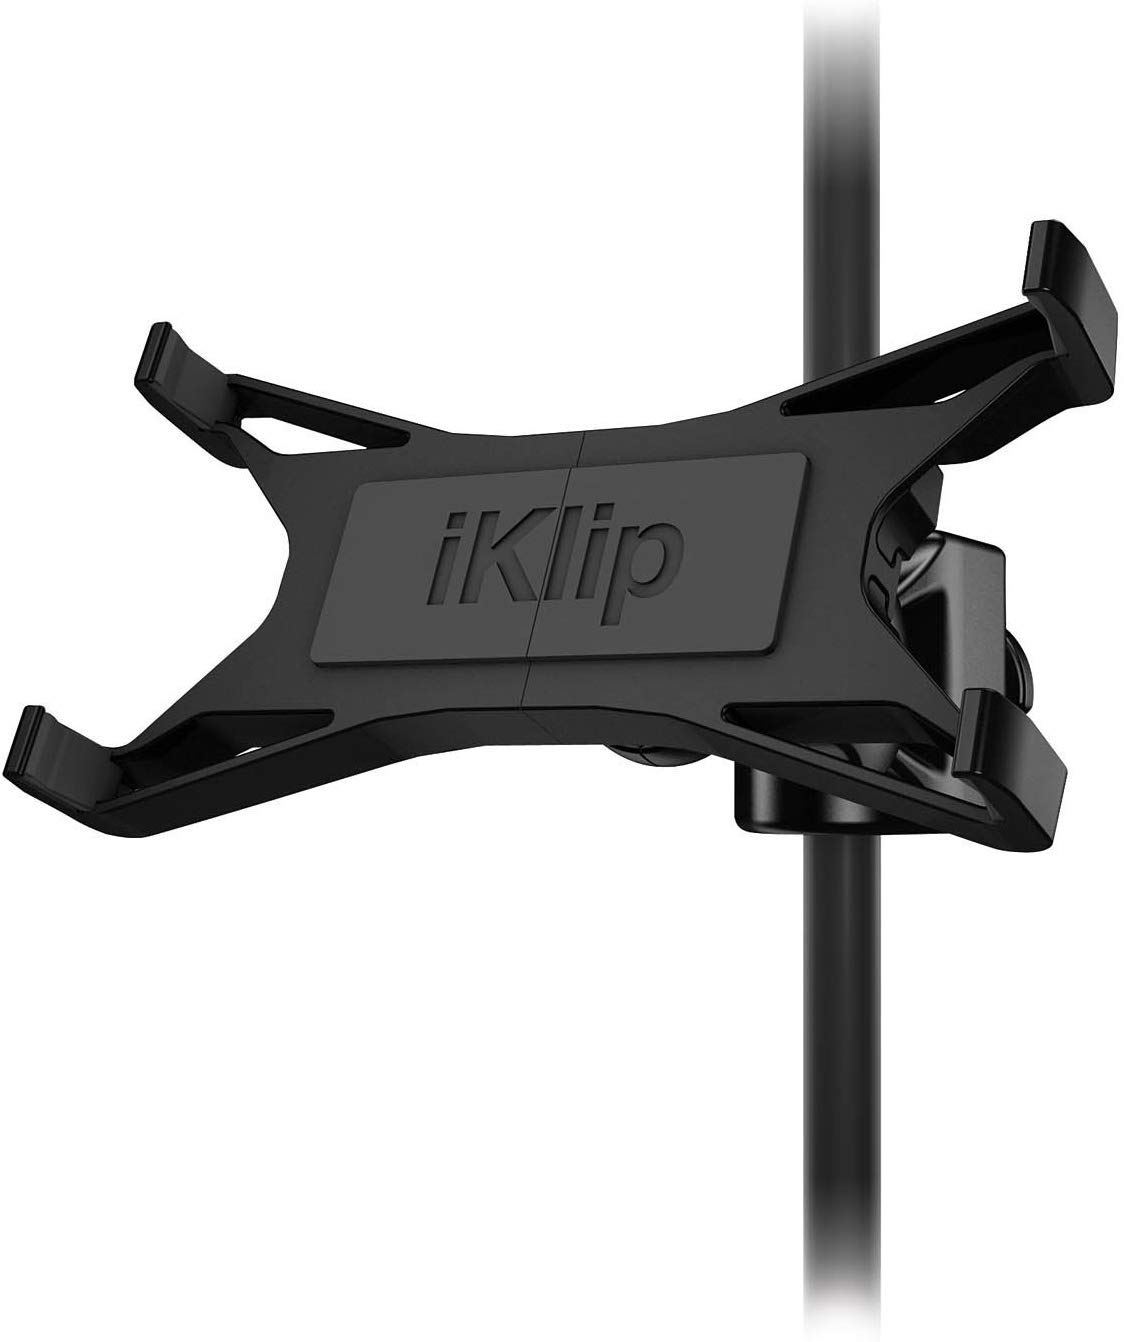 IK Multimedia iKlip Xpand verstellbare Thermoplastik Halterung für Tablet bis 30,7 cm (12,1 Zoll)